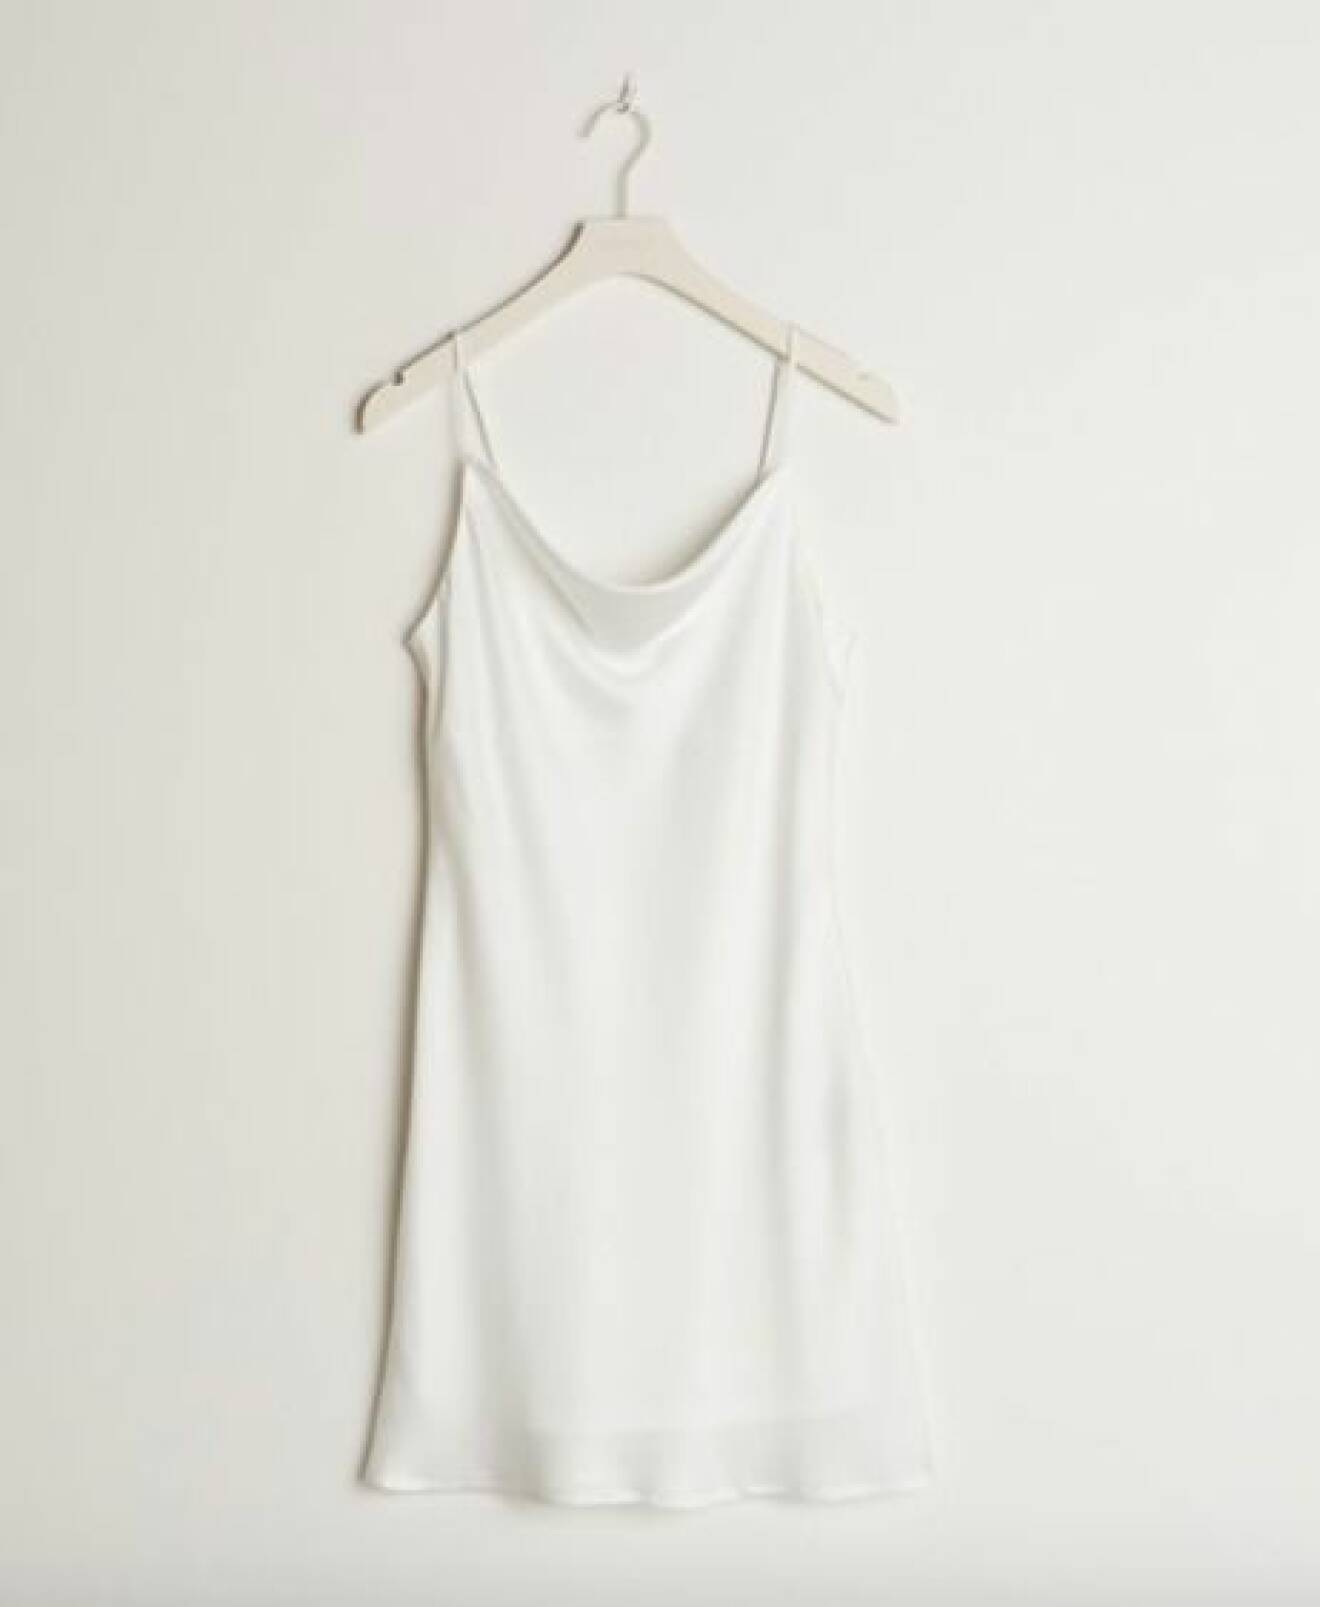 Minimalistisk kort vit klänning i silkigt material. Tunna axelband och drapering framtill. 90-tals inspirerad klänning från Gina tricot.